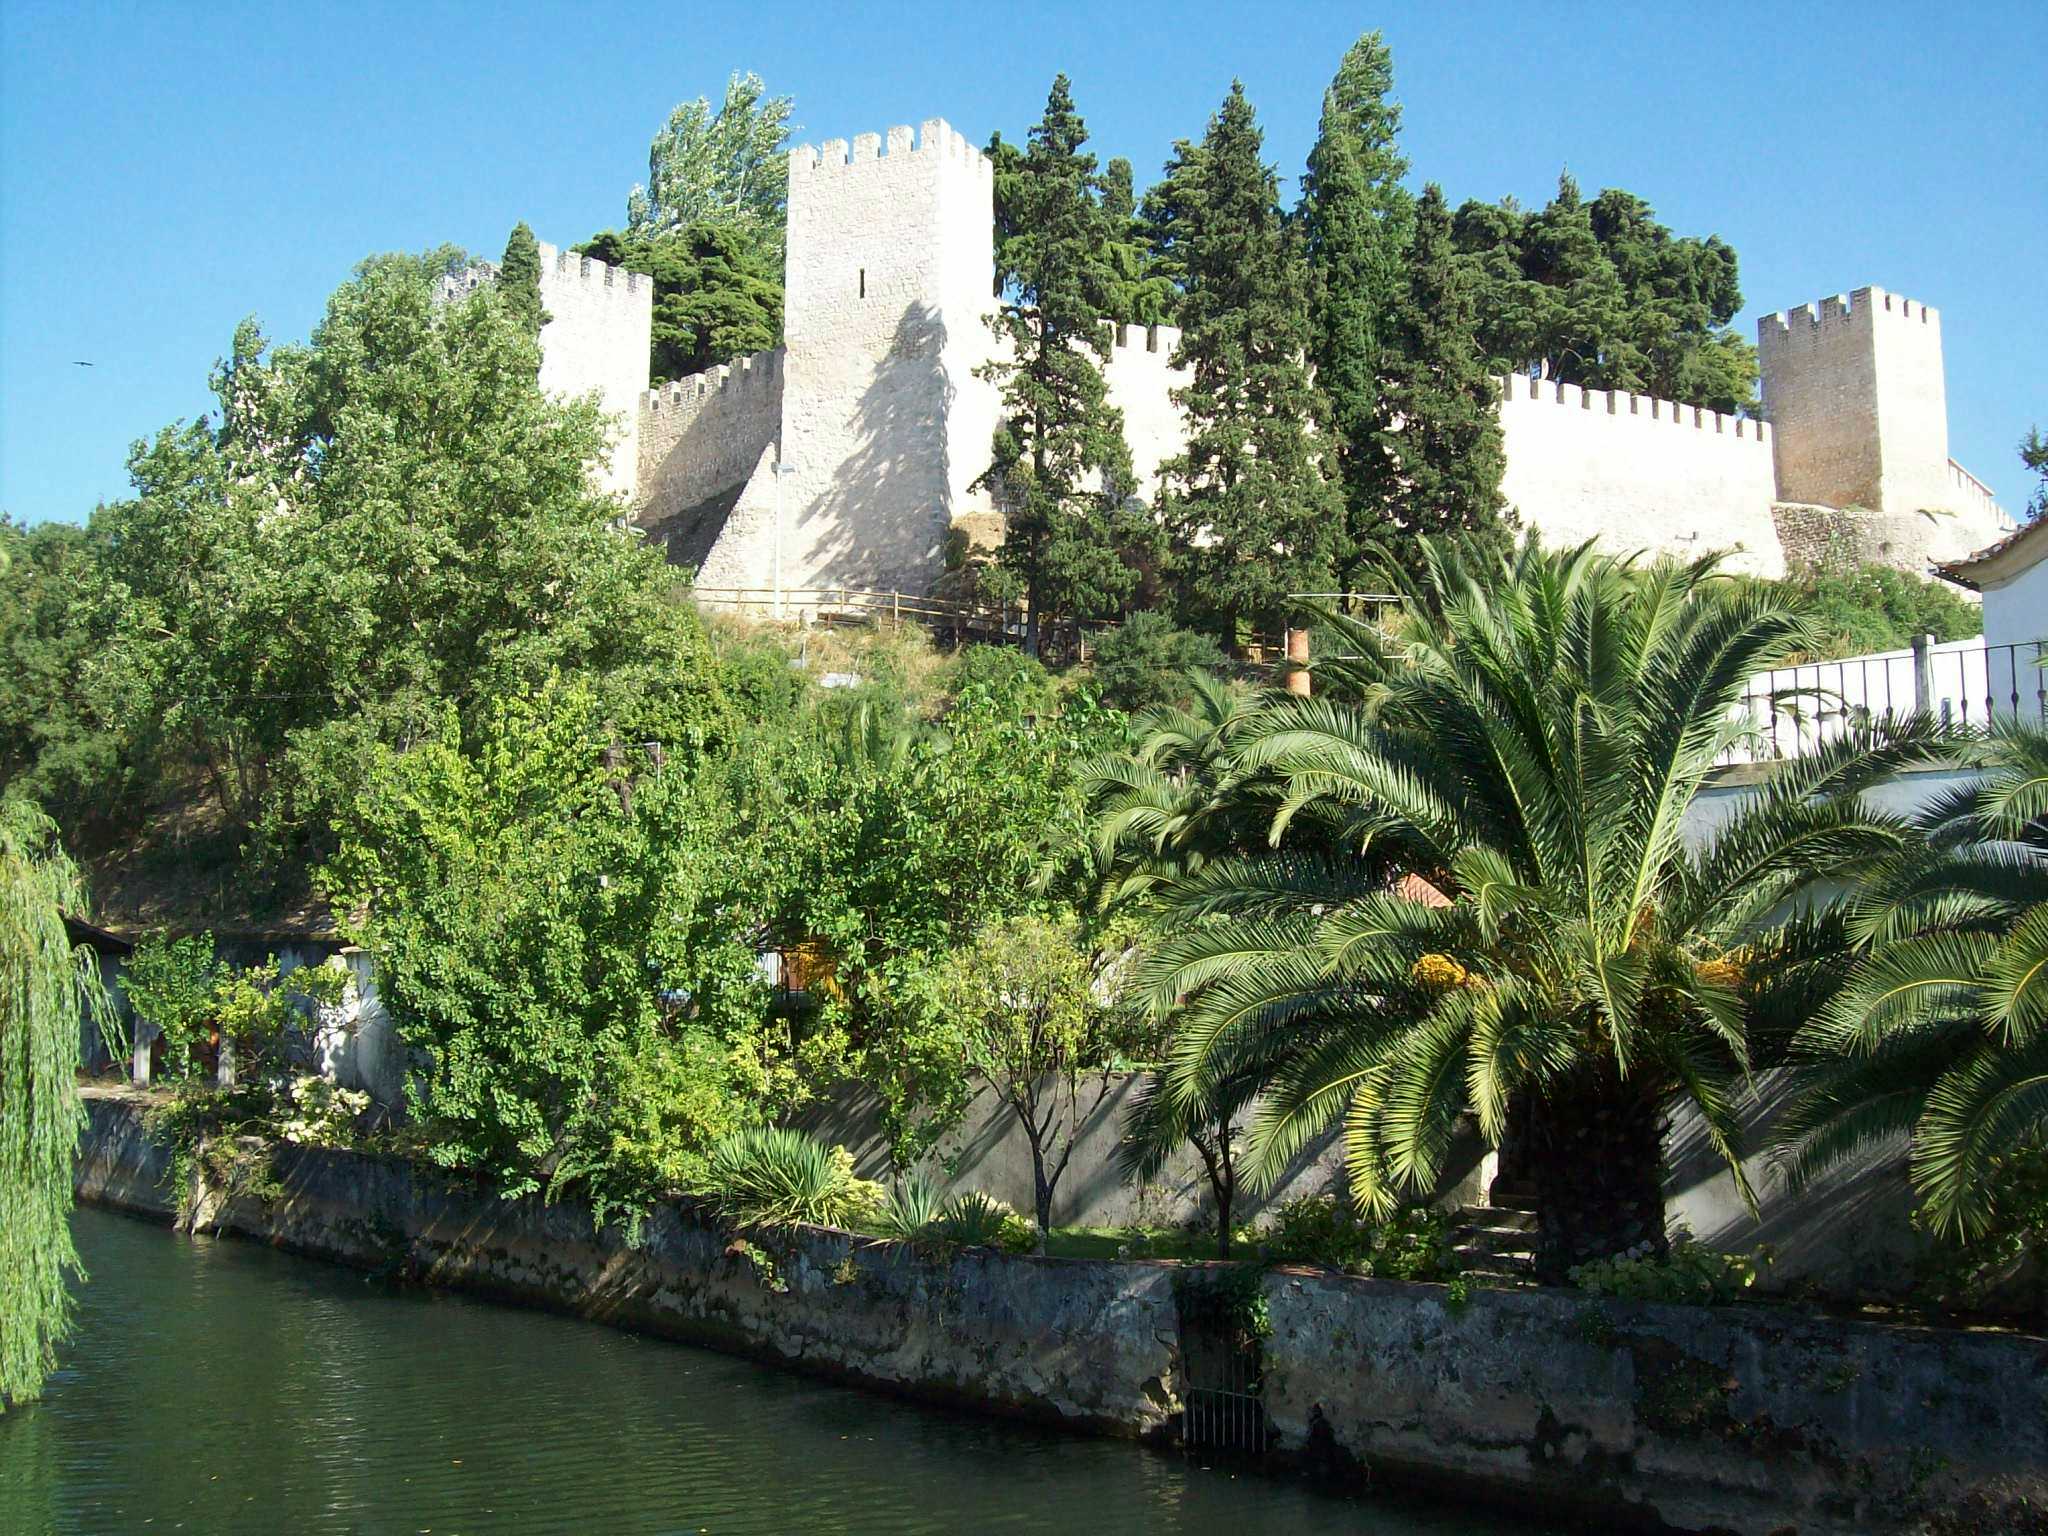 Castle of Torres Novas